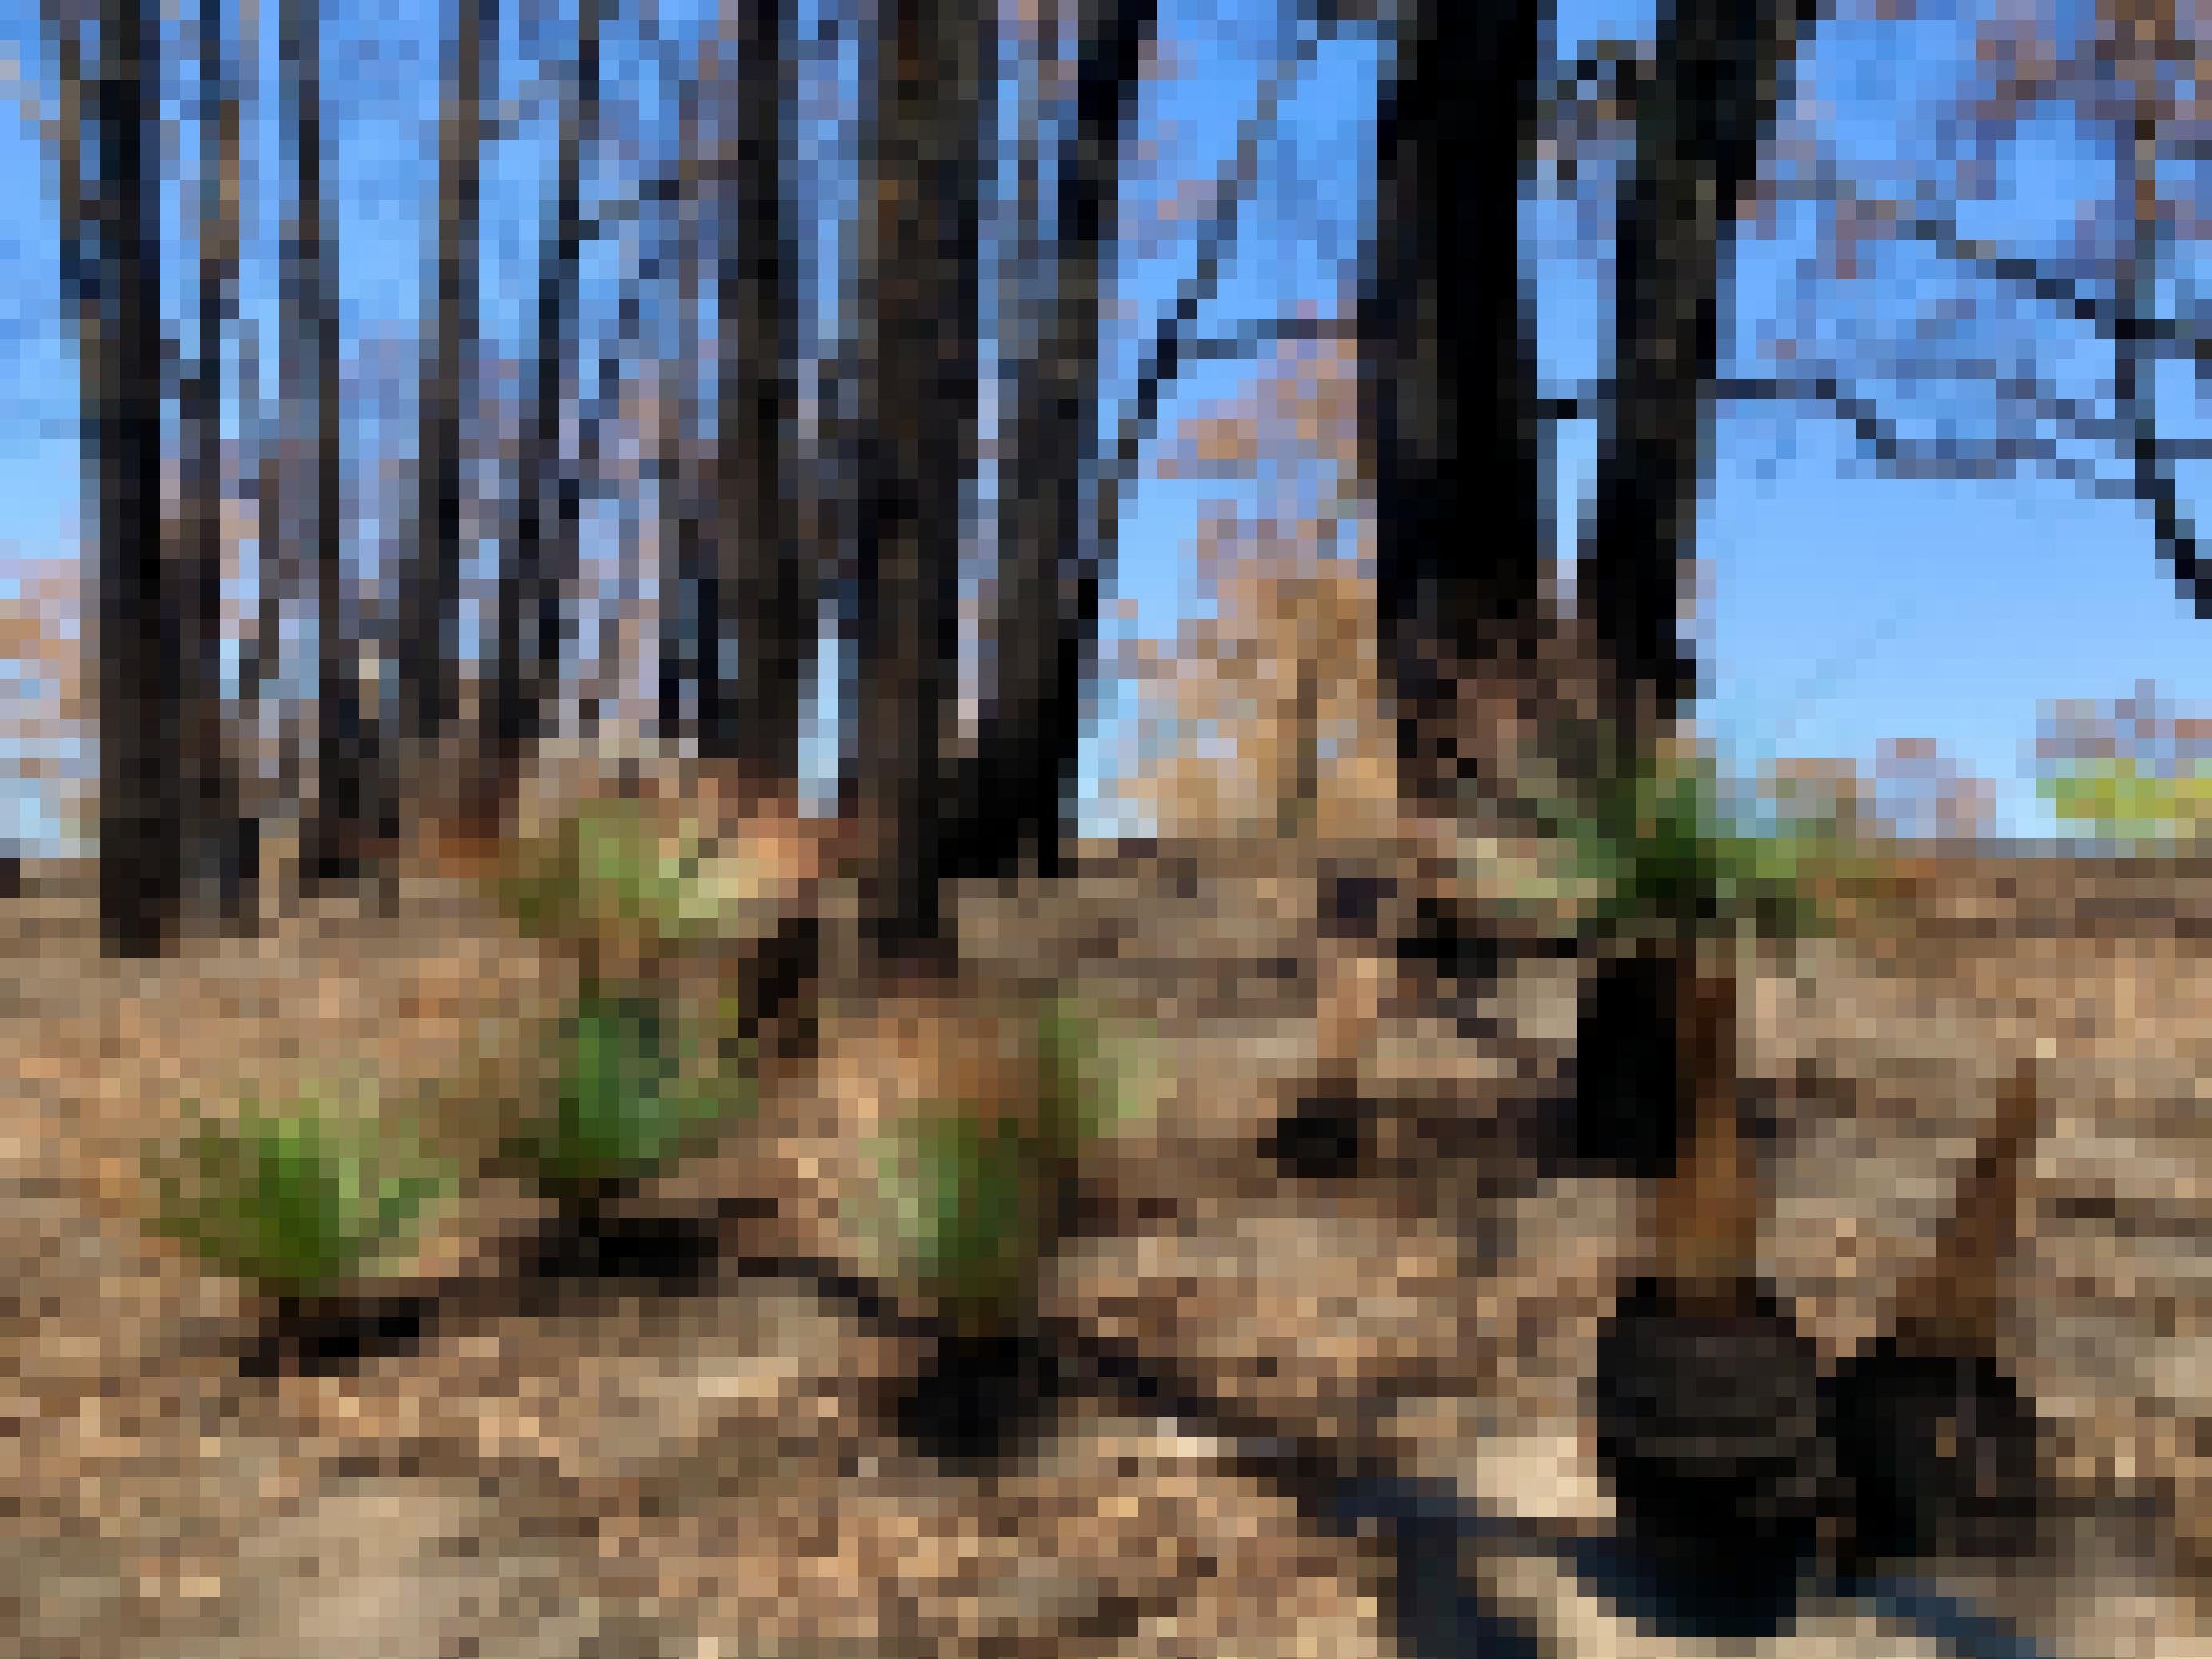 Grassbäume treiben nach einem Feuer am schnellsten wieder aus